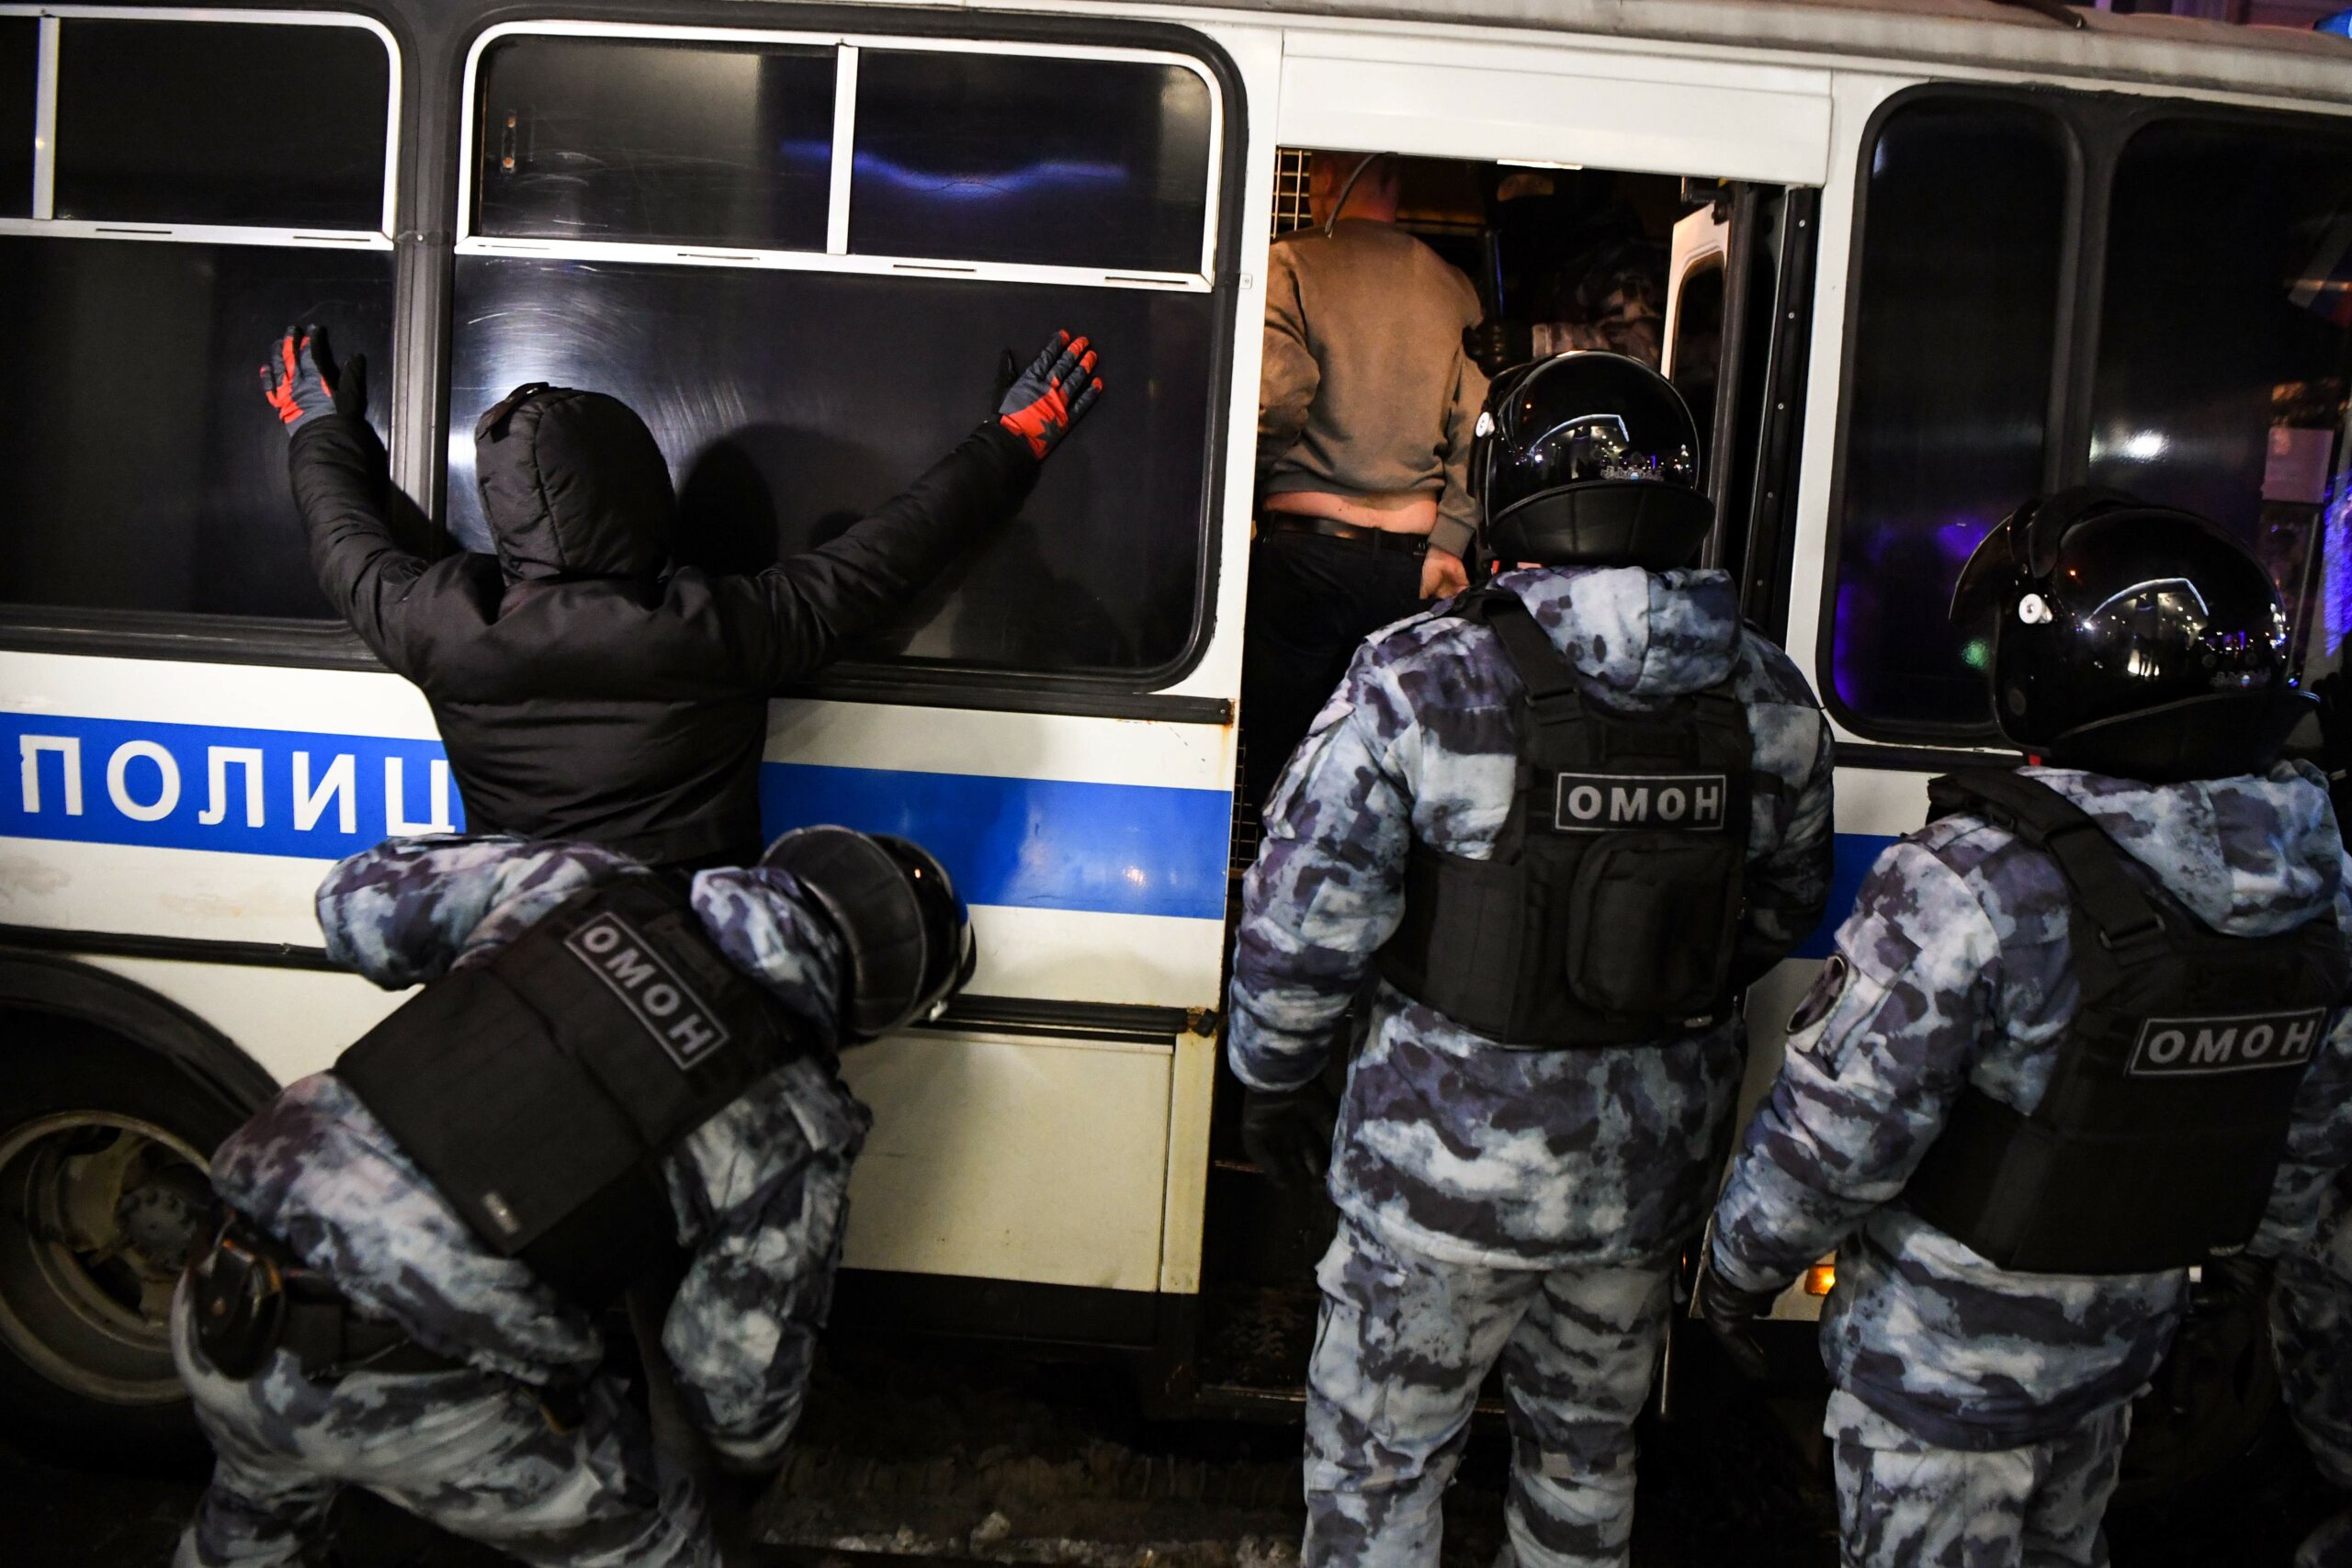 Полицейские обыскивают задержанных около автозака в Москве. Фото NATALIA KOLESNIKOVA / TASS / Scanpix / Leta